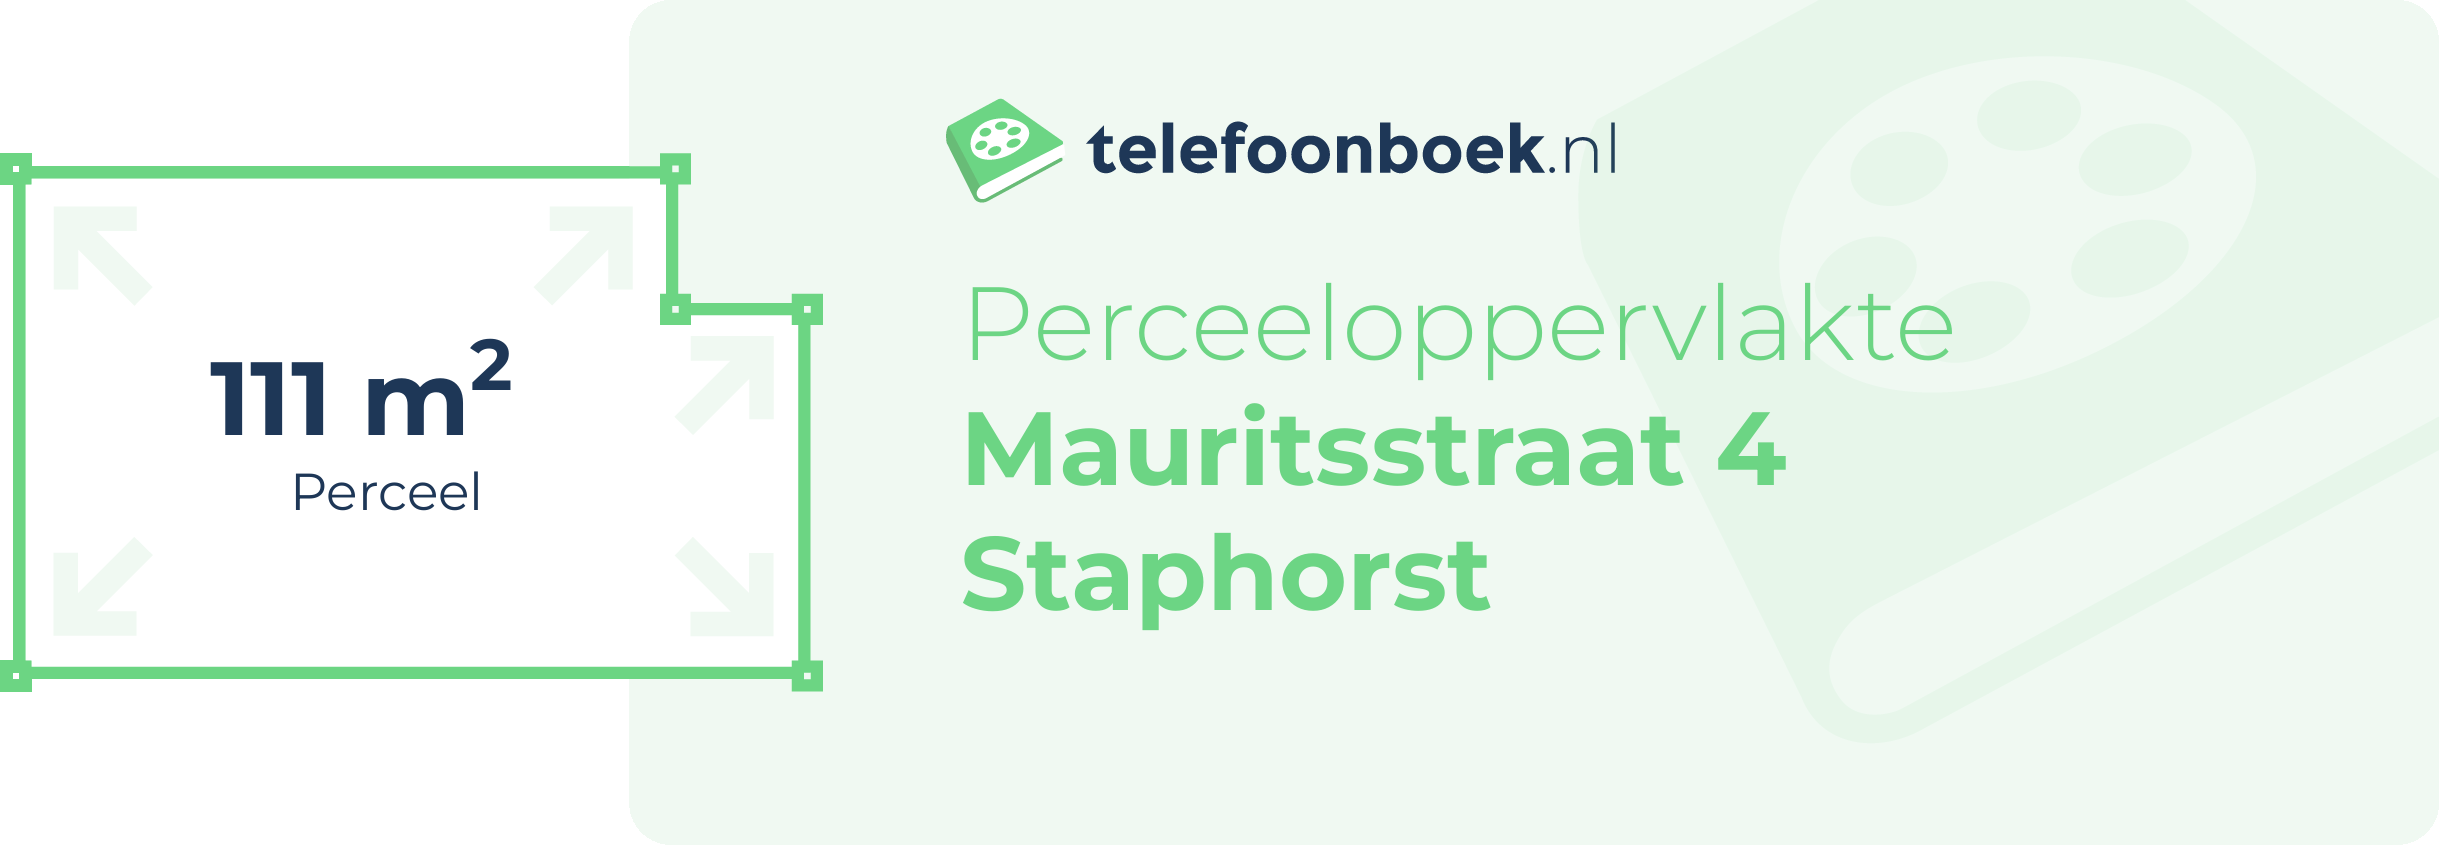 Perceeloppervlakte Mauritsstraat 4 Staphorst